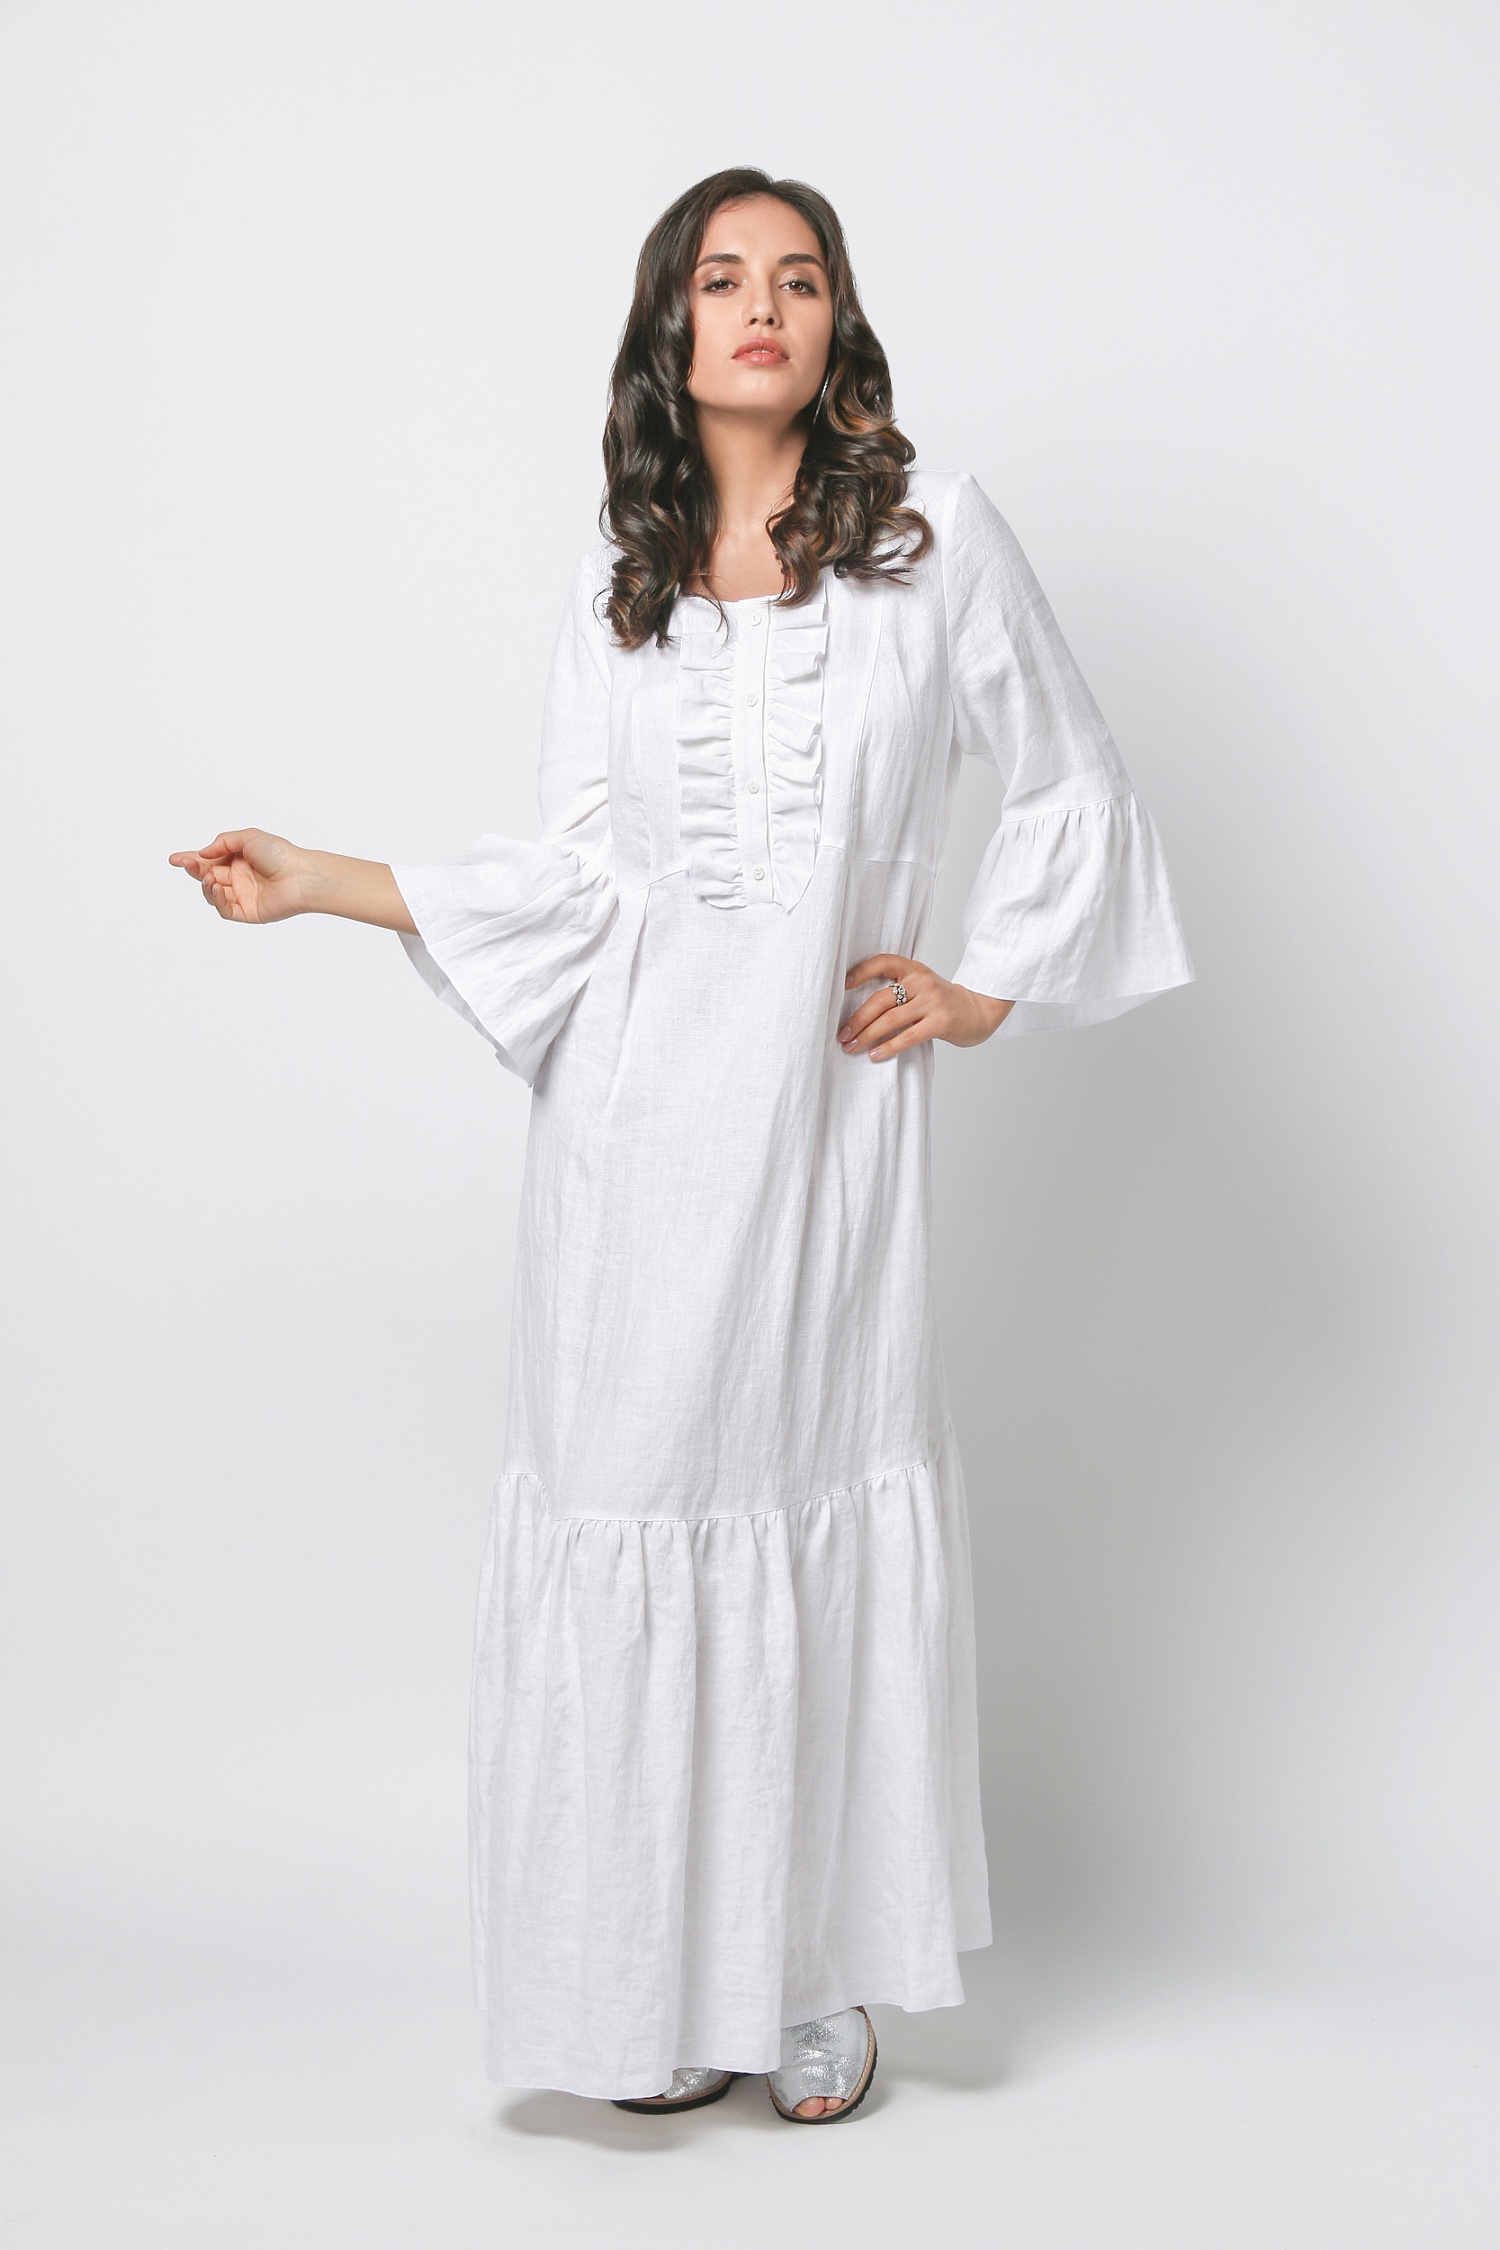 Длинное льняное платье Gaeta Enzy - белое 10 200 руб - купить в шоуруме, магазине, доставка с примеркой по России, Москве